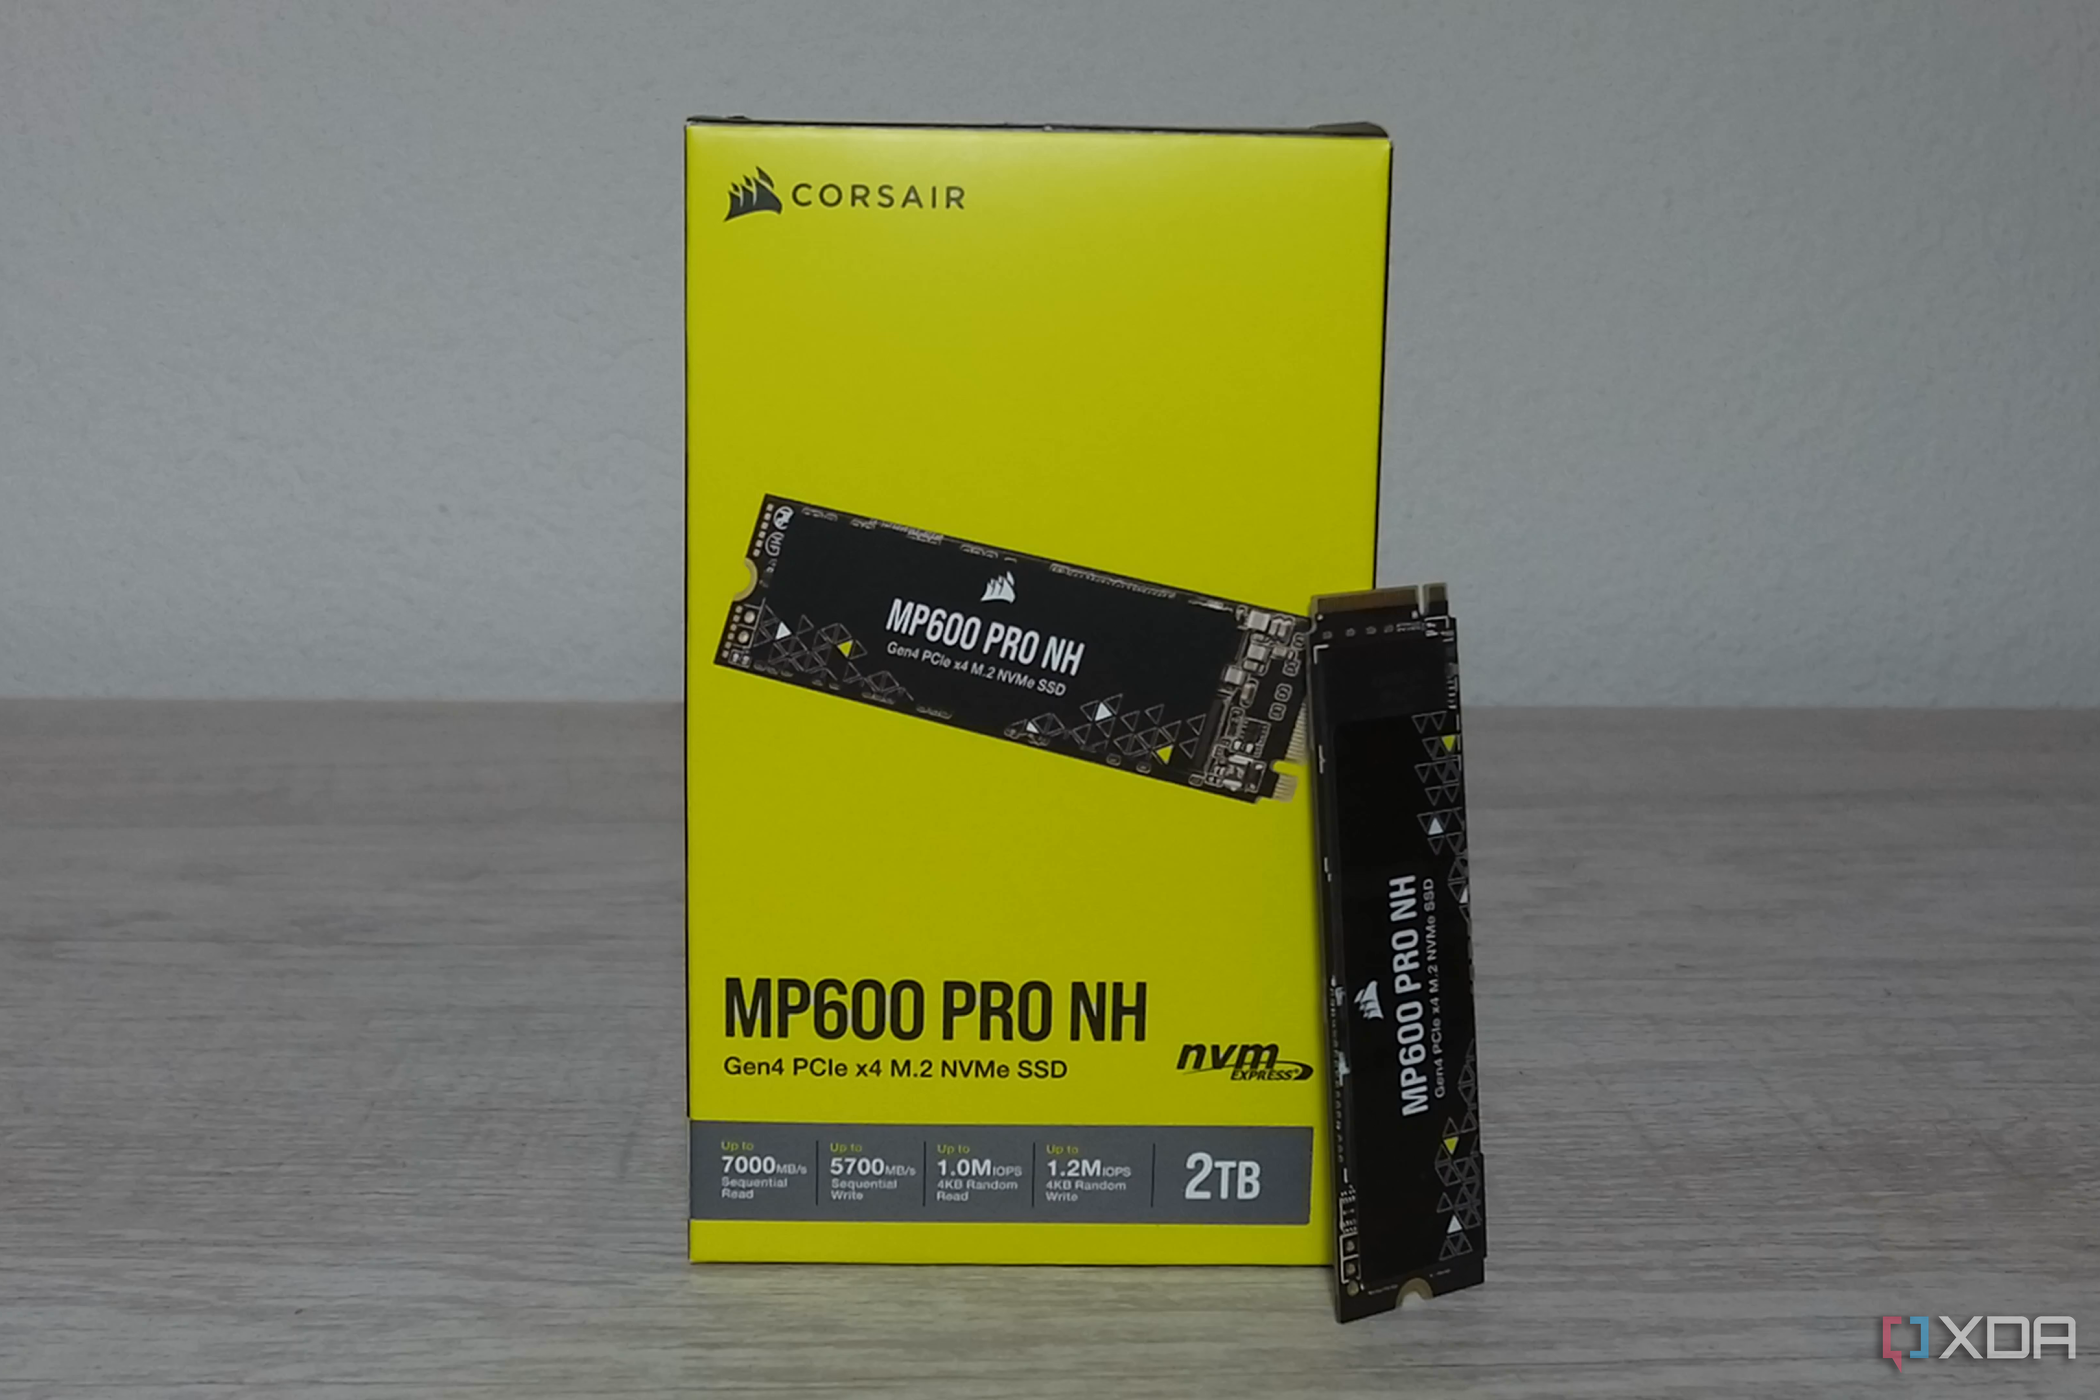 The Corsair MP600 Pro NH SSD and box.